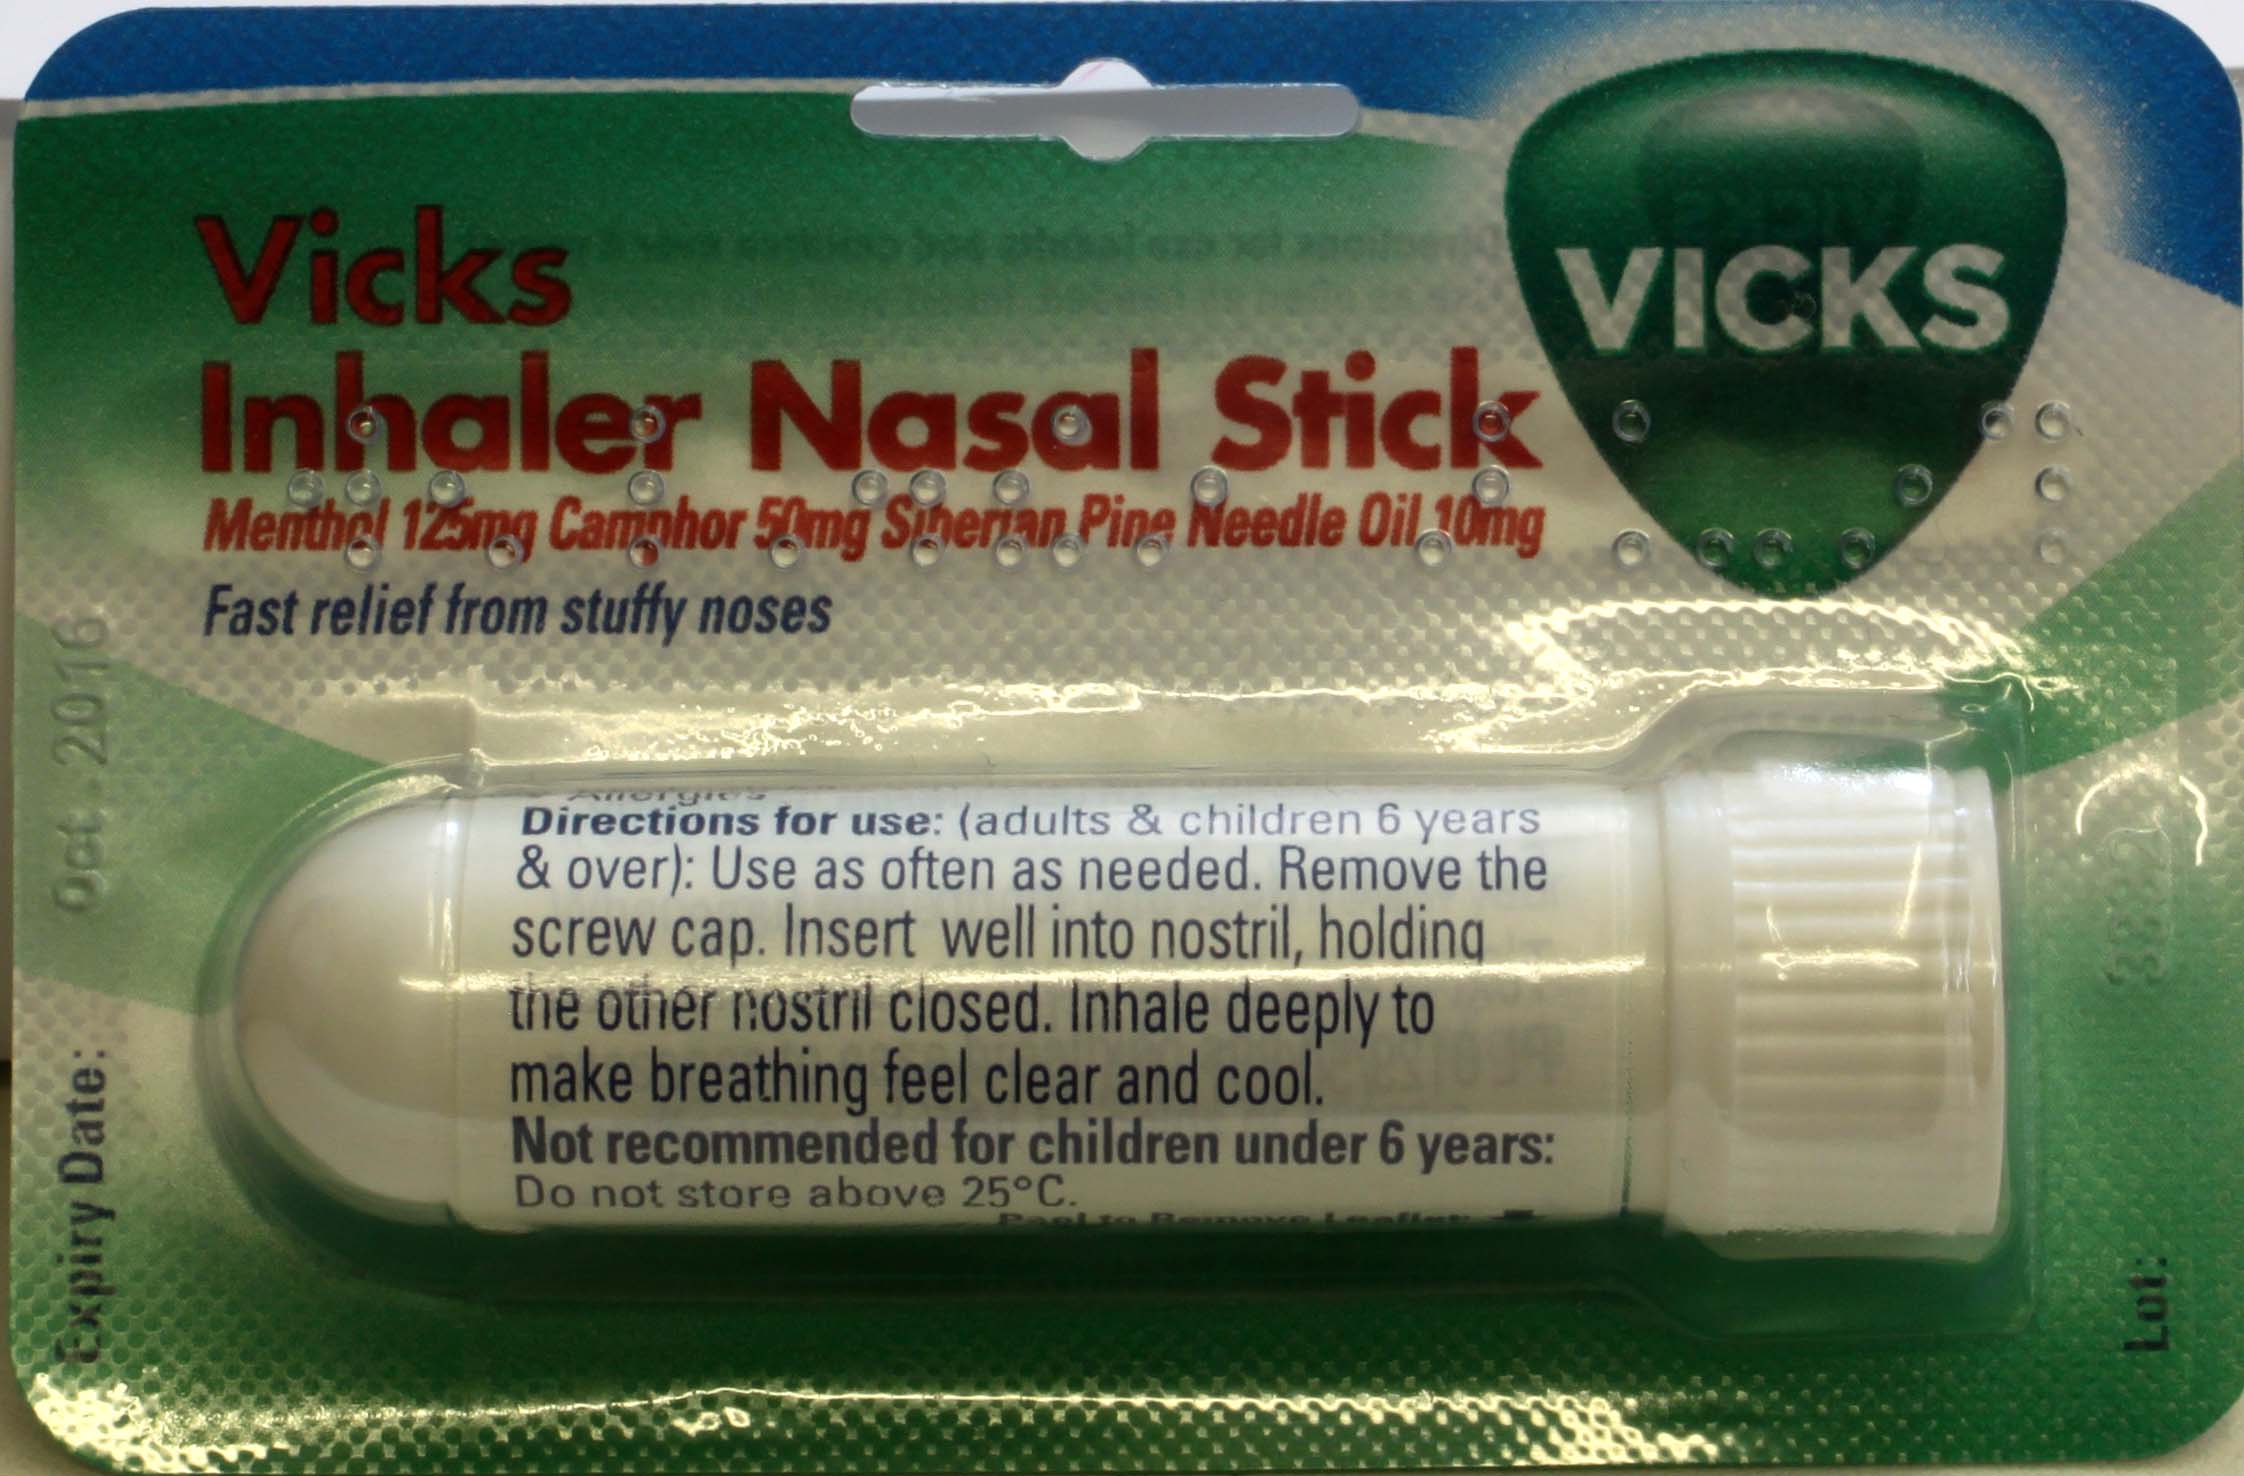 Feel clear. Vicks Inhaler. Vicks Stick. Relief cough Cold Nasal Inhaler. Индийское средство Relief cough Cold Nasal Inhaler.